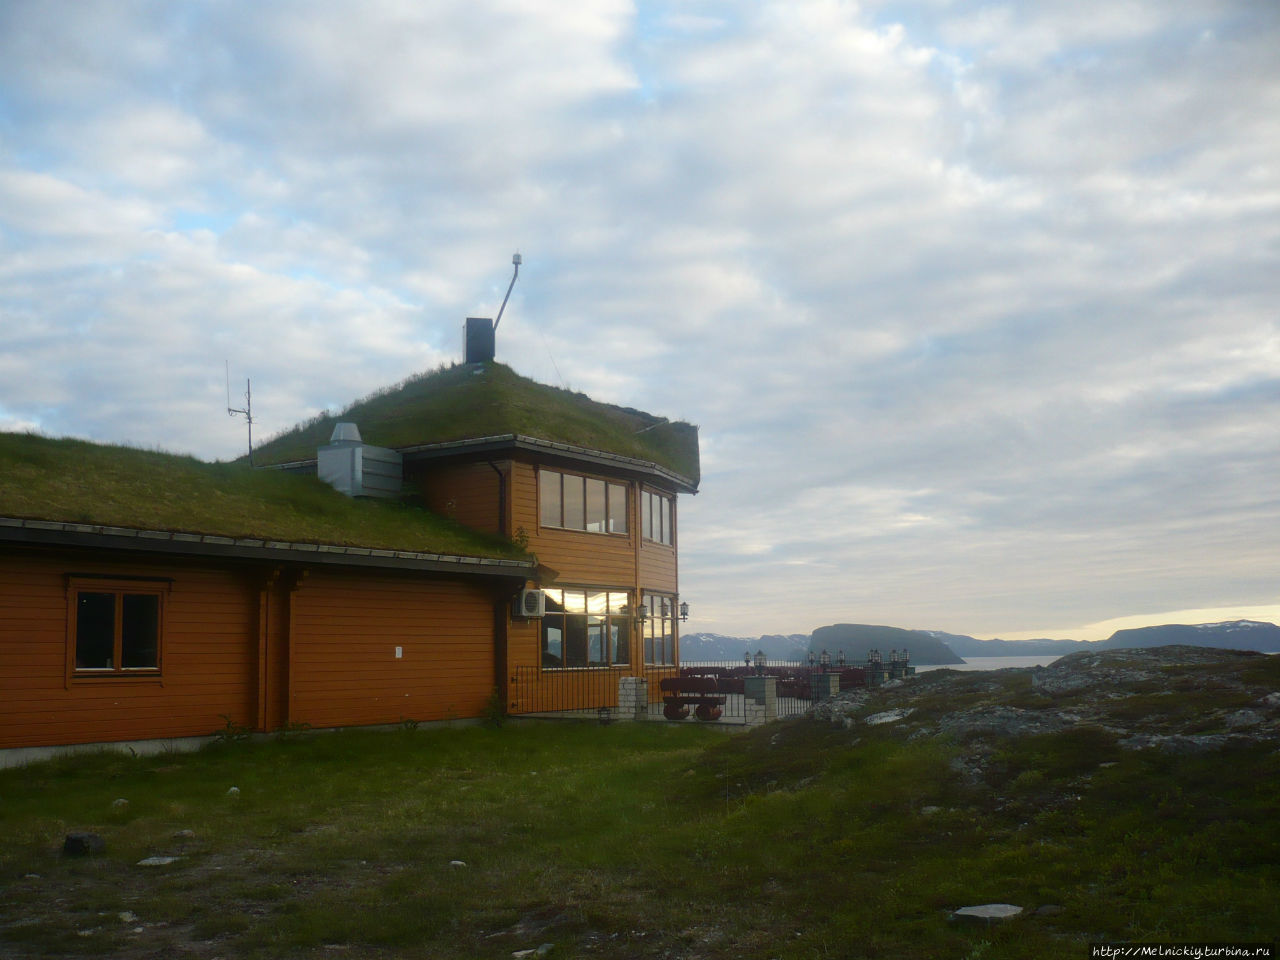 Ресторан «Турист» Хаммерфест, Норвегия